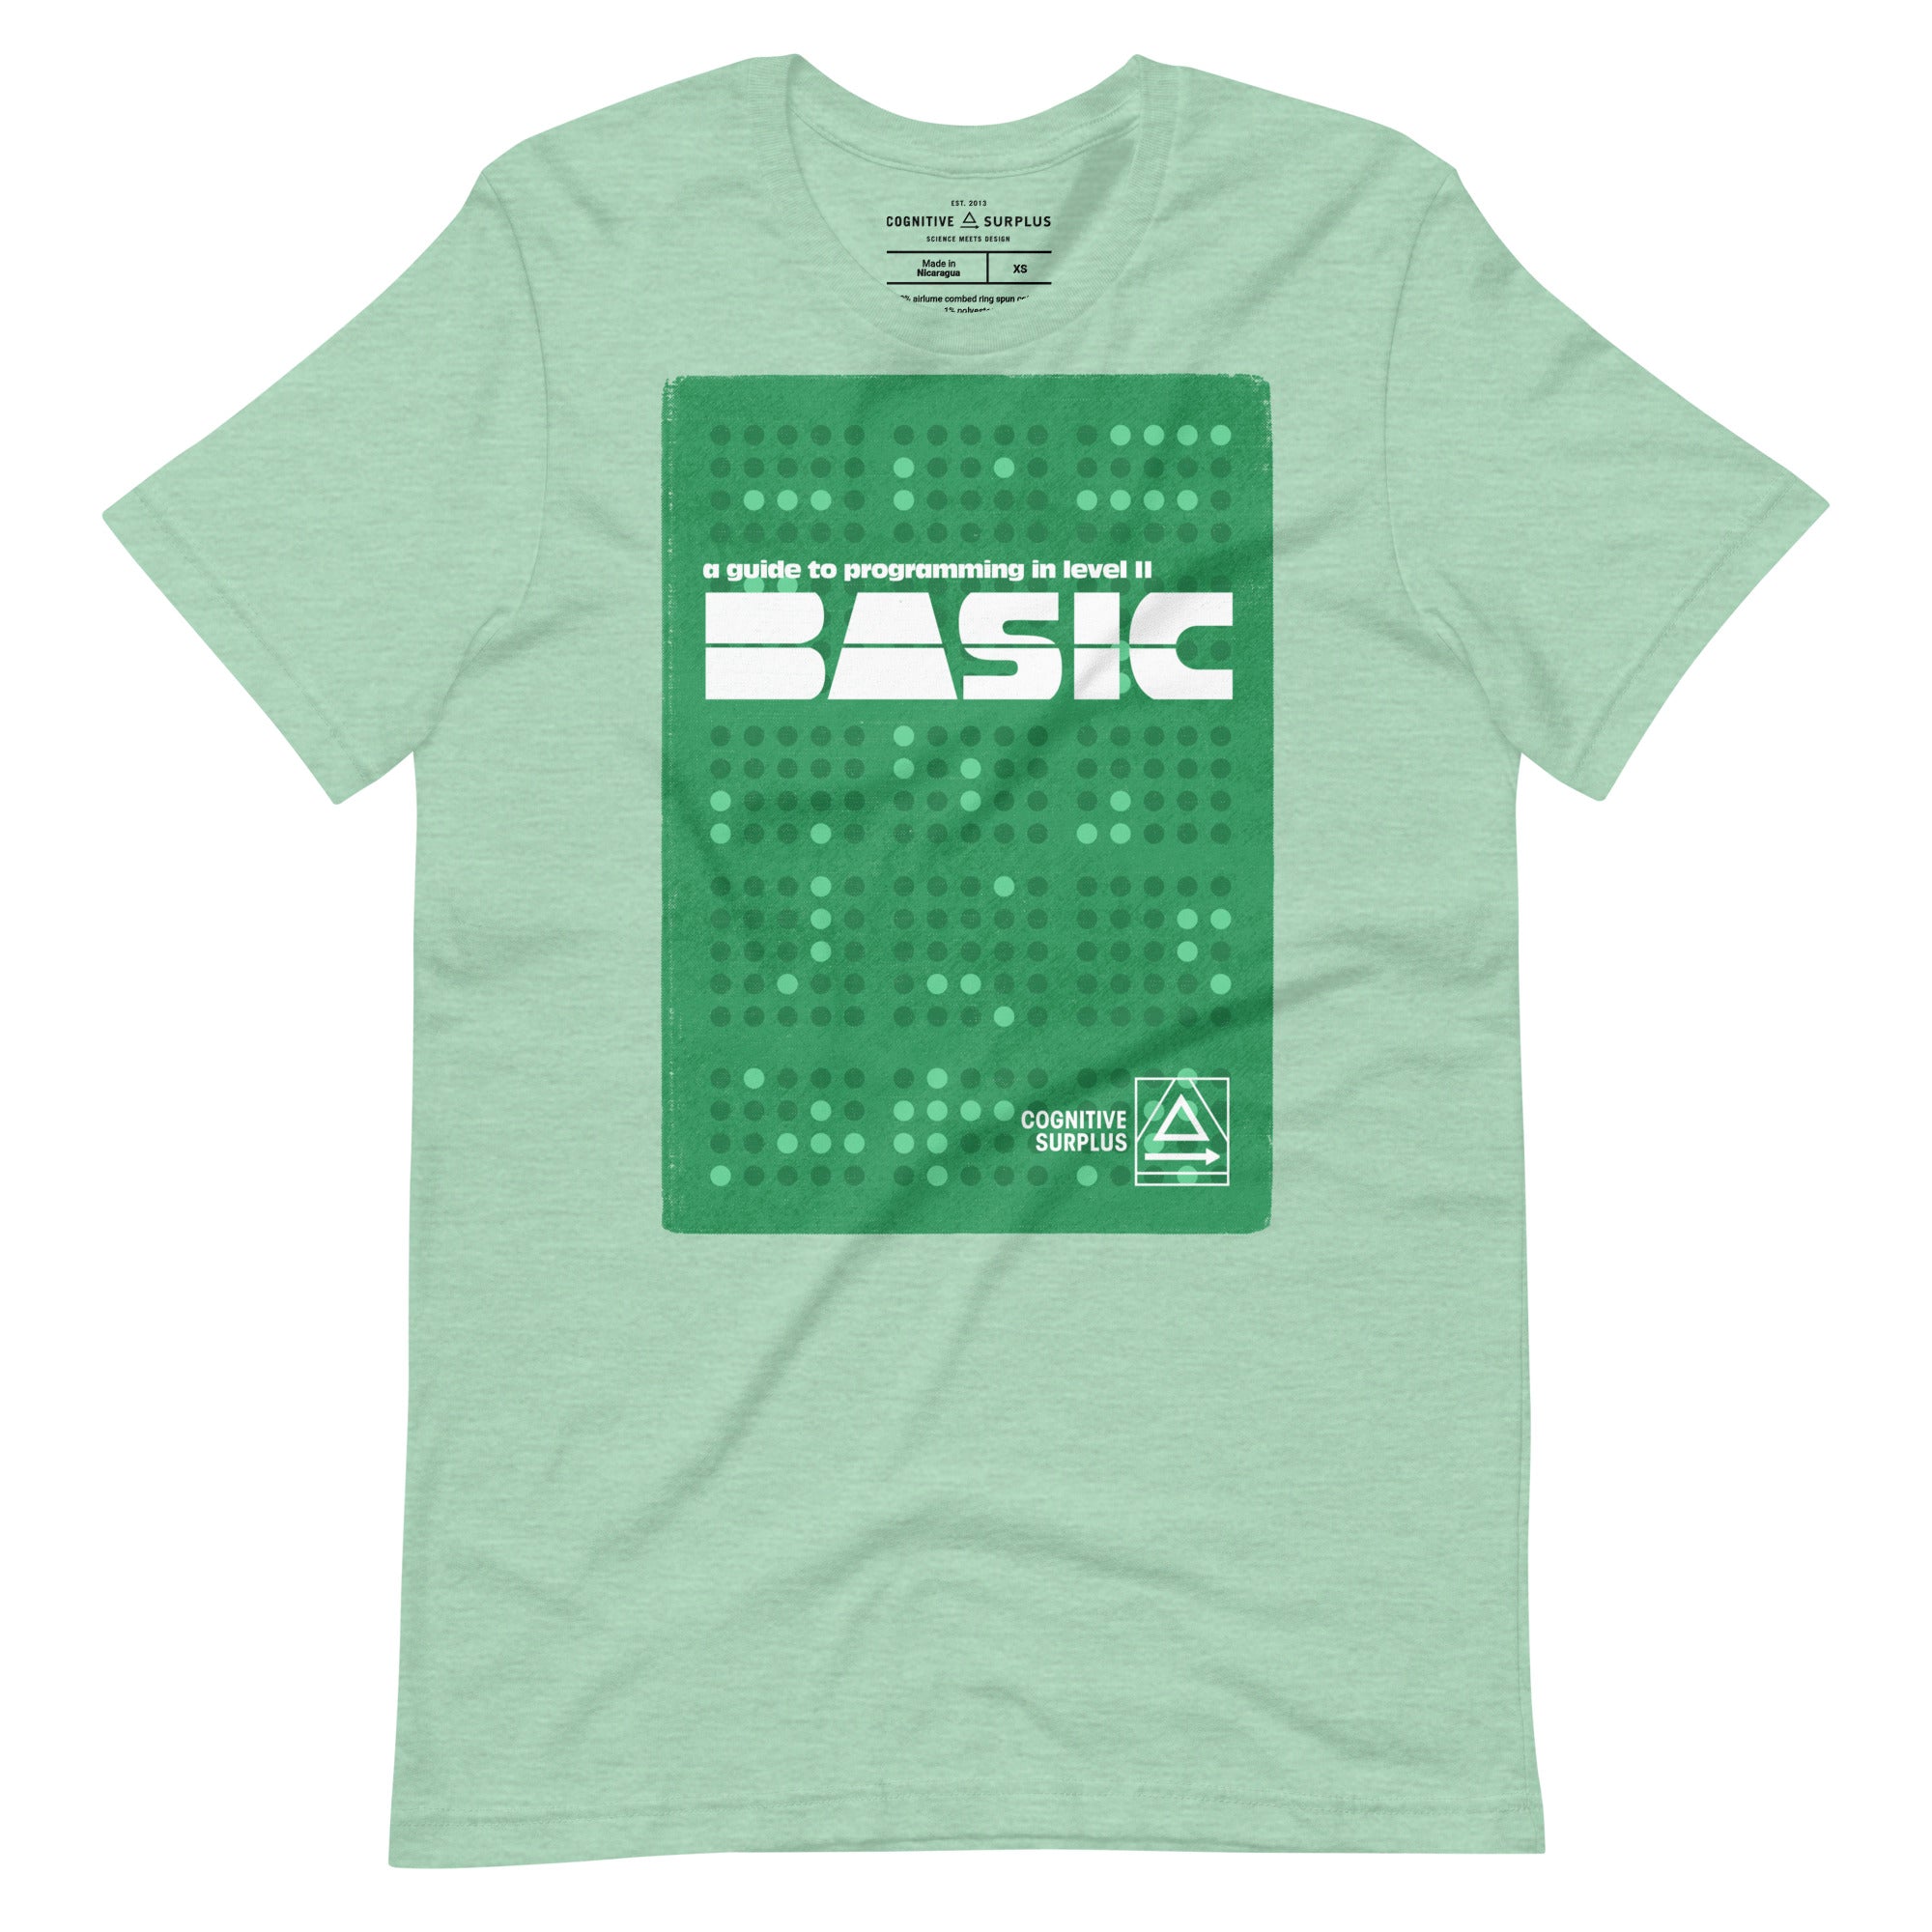 unisex-staple-t-shirt-heather-prism-mint-front-659d8d79abcfa.jpg